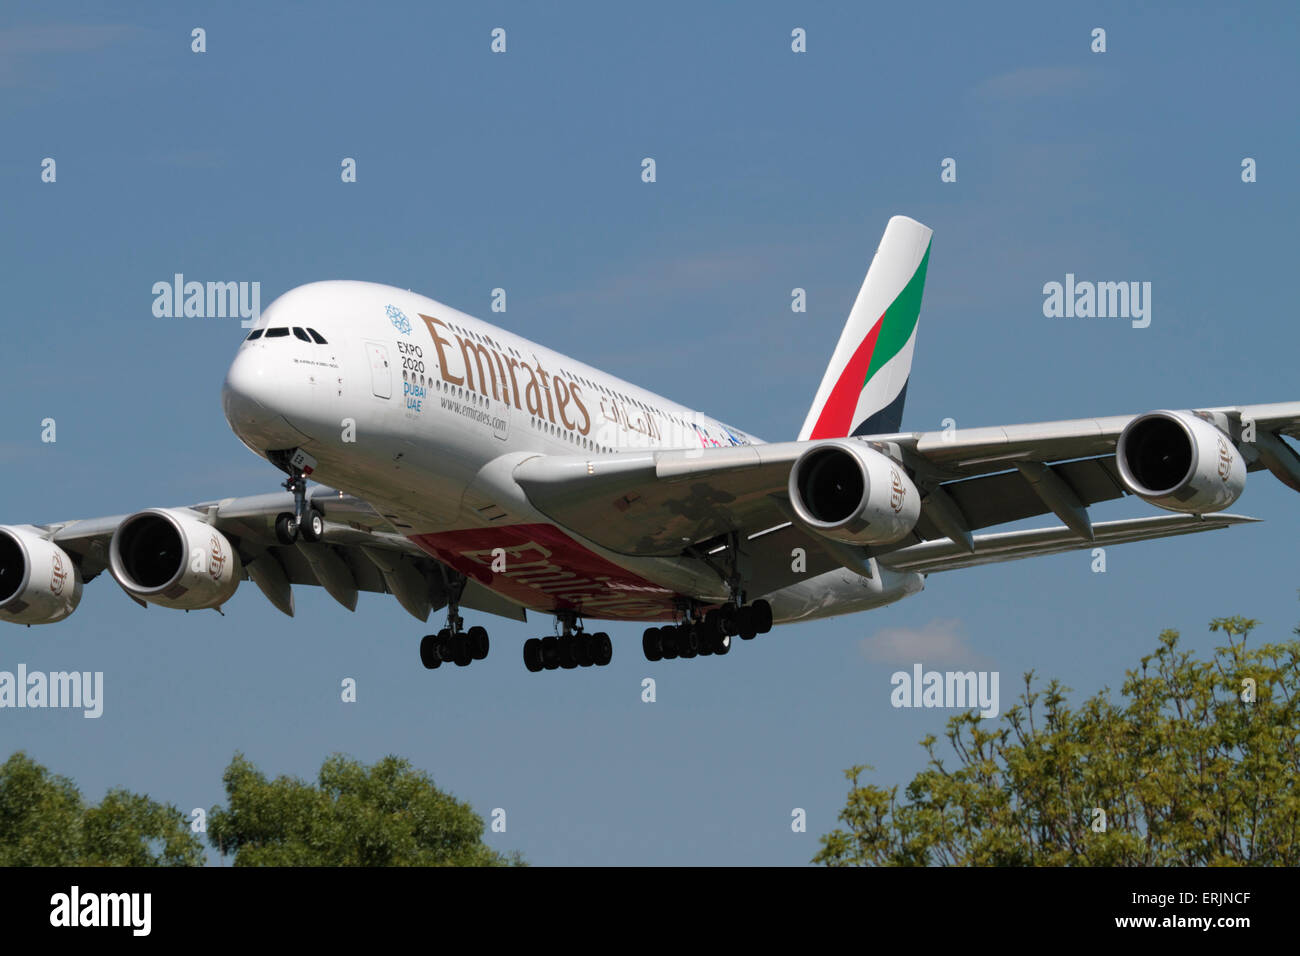 La compagnie aérienne Emirates Airbus A380 grand quadrimoteur à avion long courrier en approche à l'aéroport Heathrow de Londres. Gros plan sur l'avant. Banque D'Images